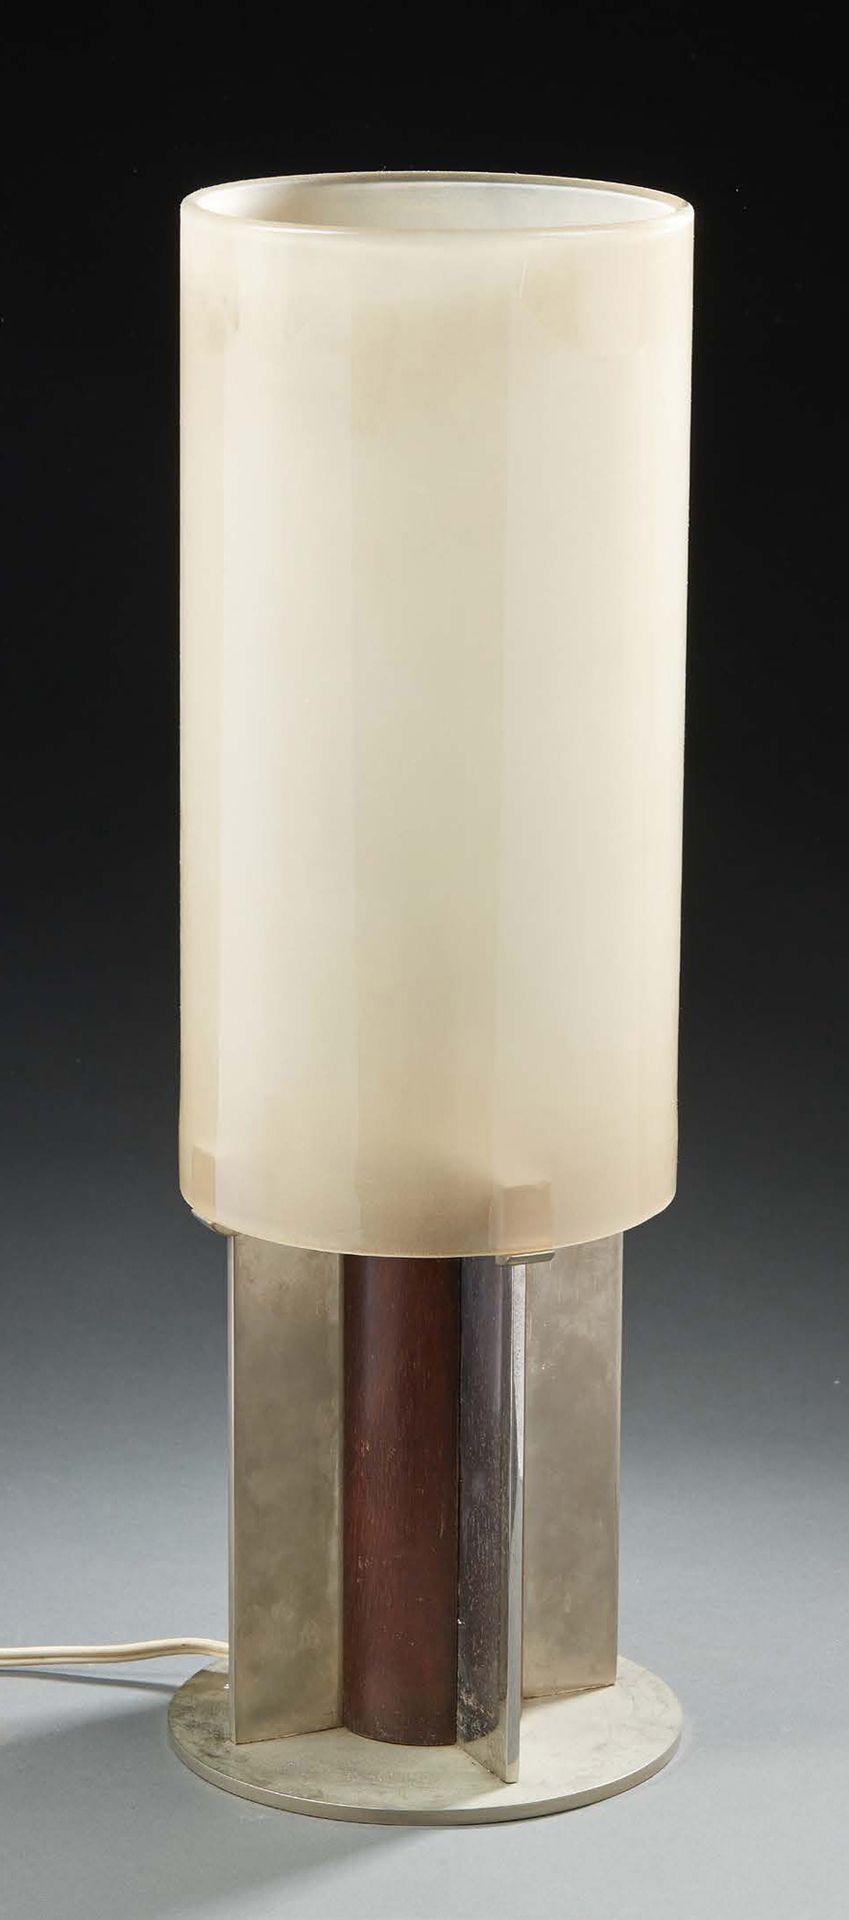 Jean-Boris LACROIX (1902 - 1984) 灯具采用镀镍的金属翅片框架，内含异国情调的木质元素，喷砂玻璃的锥形反射器。
签有 "Boris&hellip;